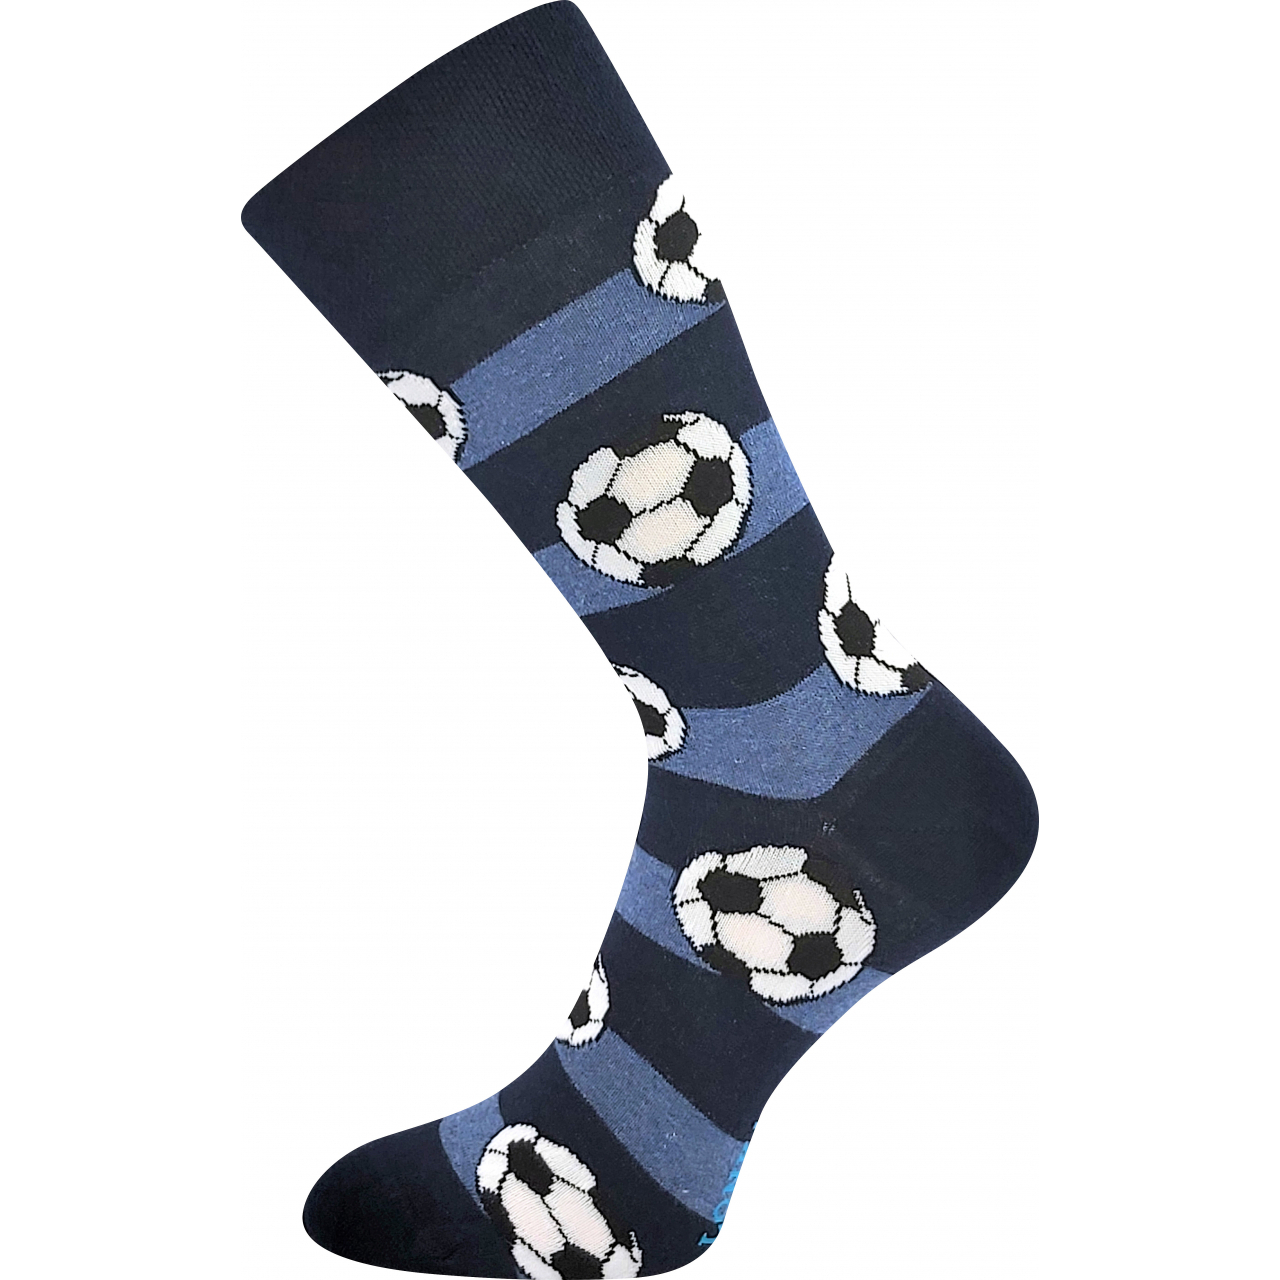 Ponožky trendy pánské Lonka Depate Fotbal - černé-modré, 39-42